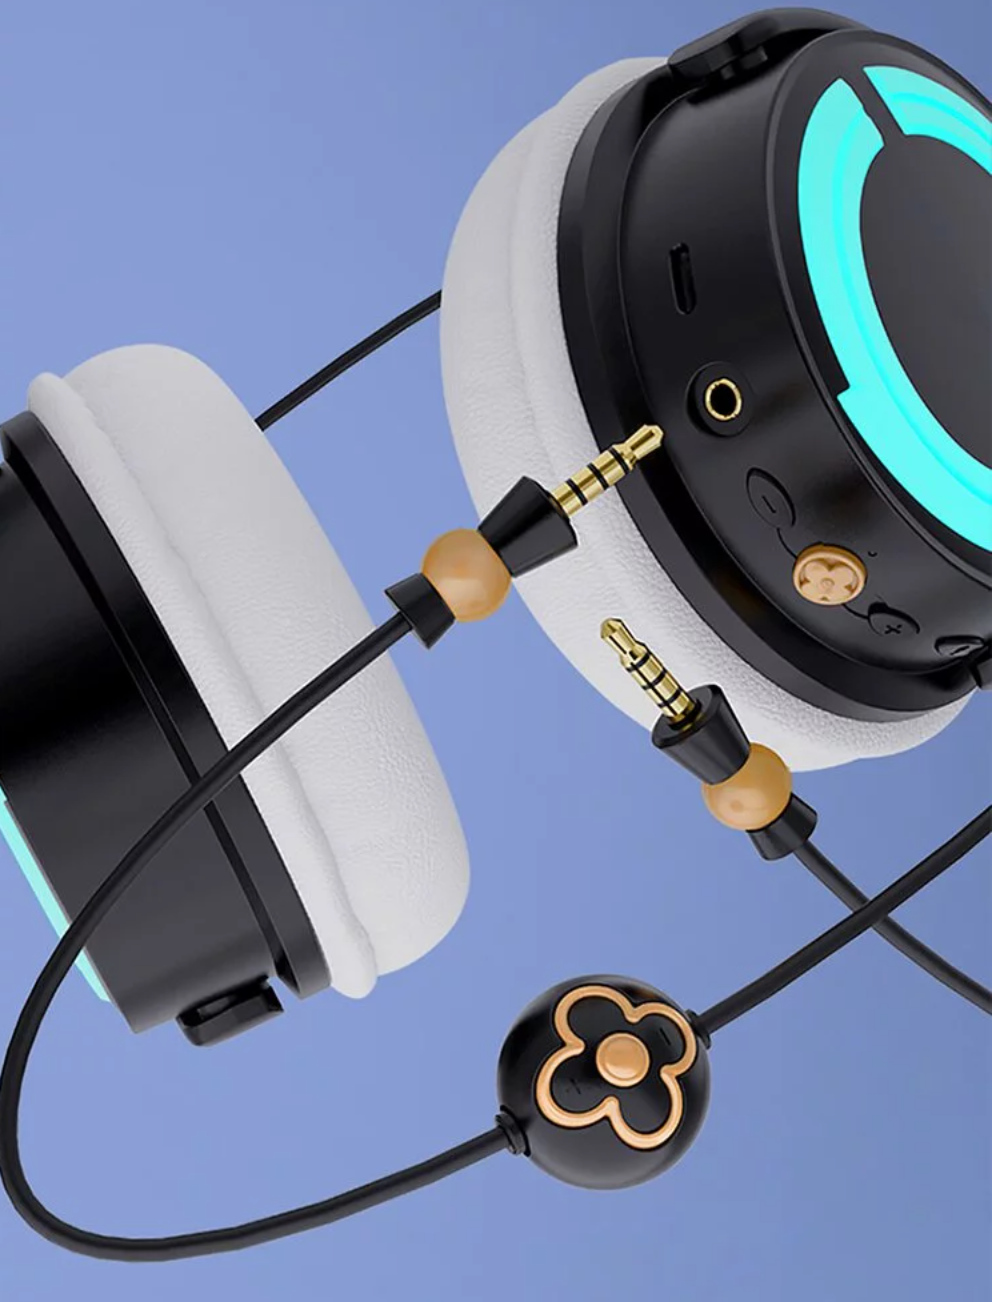 【雷姆耳機】貓耳耳機與Re:Zero聯名推出造型藍芽耳機，讓雷姆老婆陪著一起聽音樂! - 貓耳耳機, 貓耳, 呈星, RE0, 雷姆, 敗家輝哥, 編輯推薦, Re:從零開始的異世界生活, 欣輝 - 敗家達人推薦